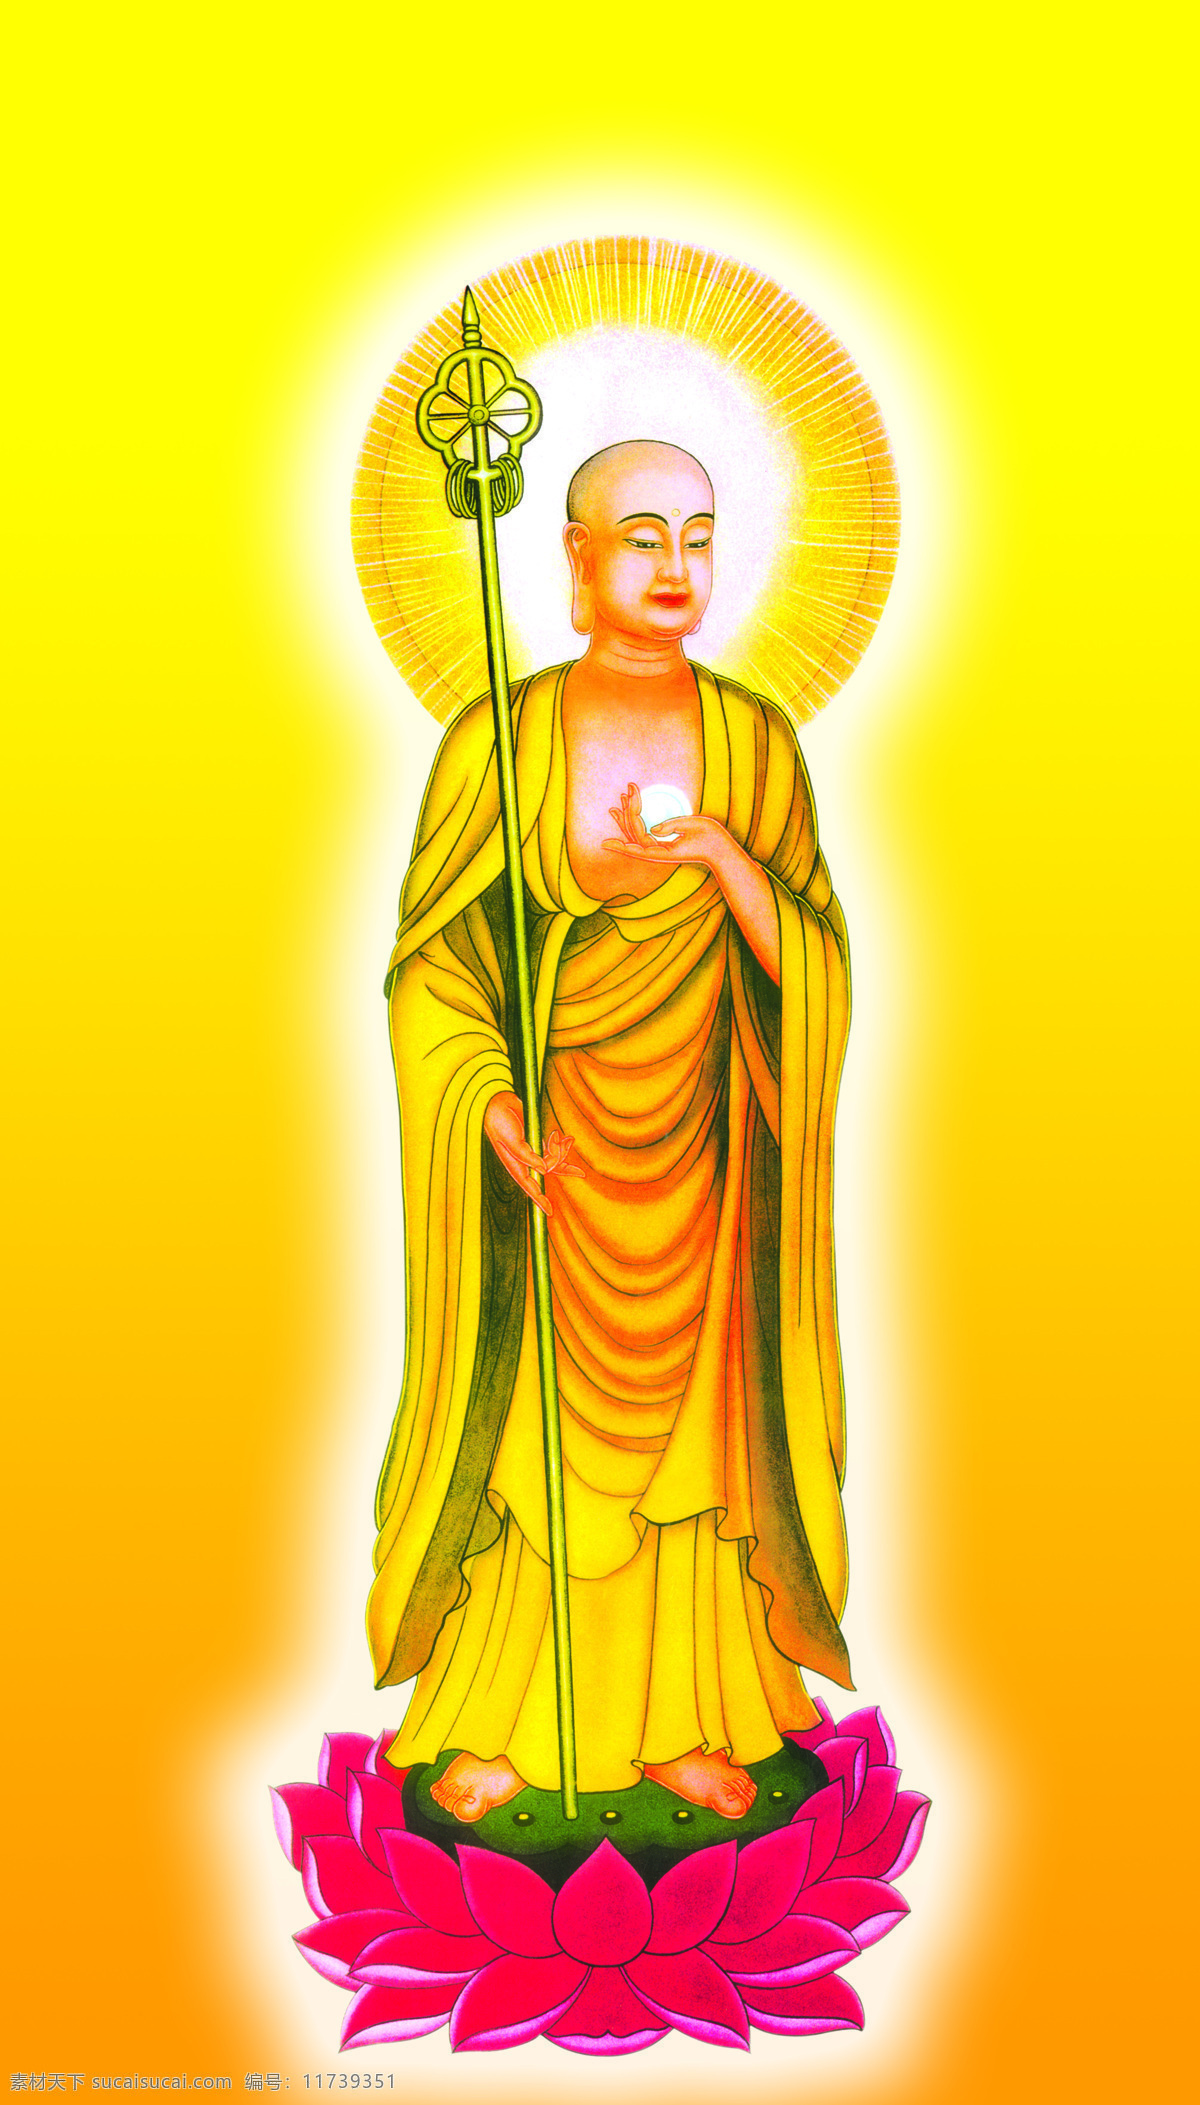 地藏王 菩萨 佛教 如来佛 文化艺术 宗教信仰 地藏王菩萨 地藏菩萨 神仙